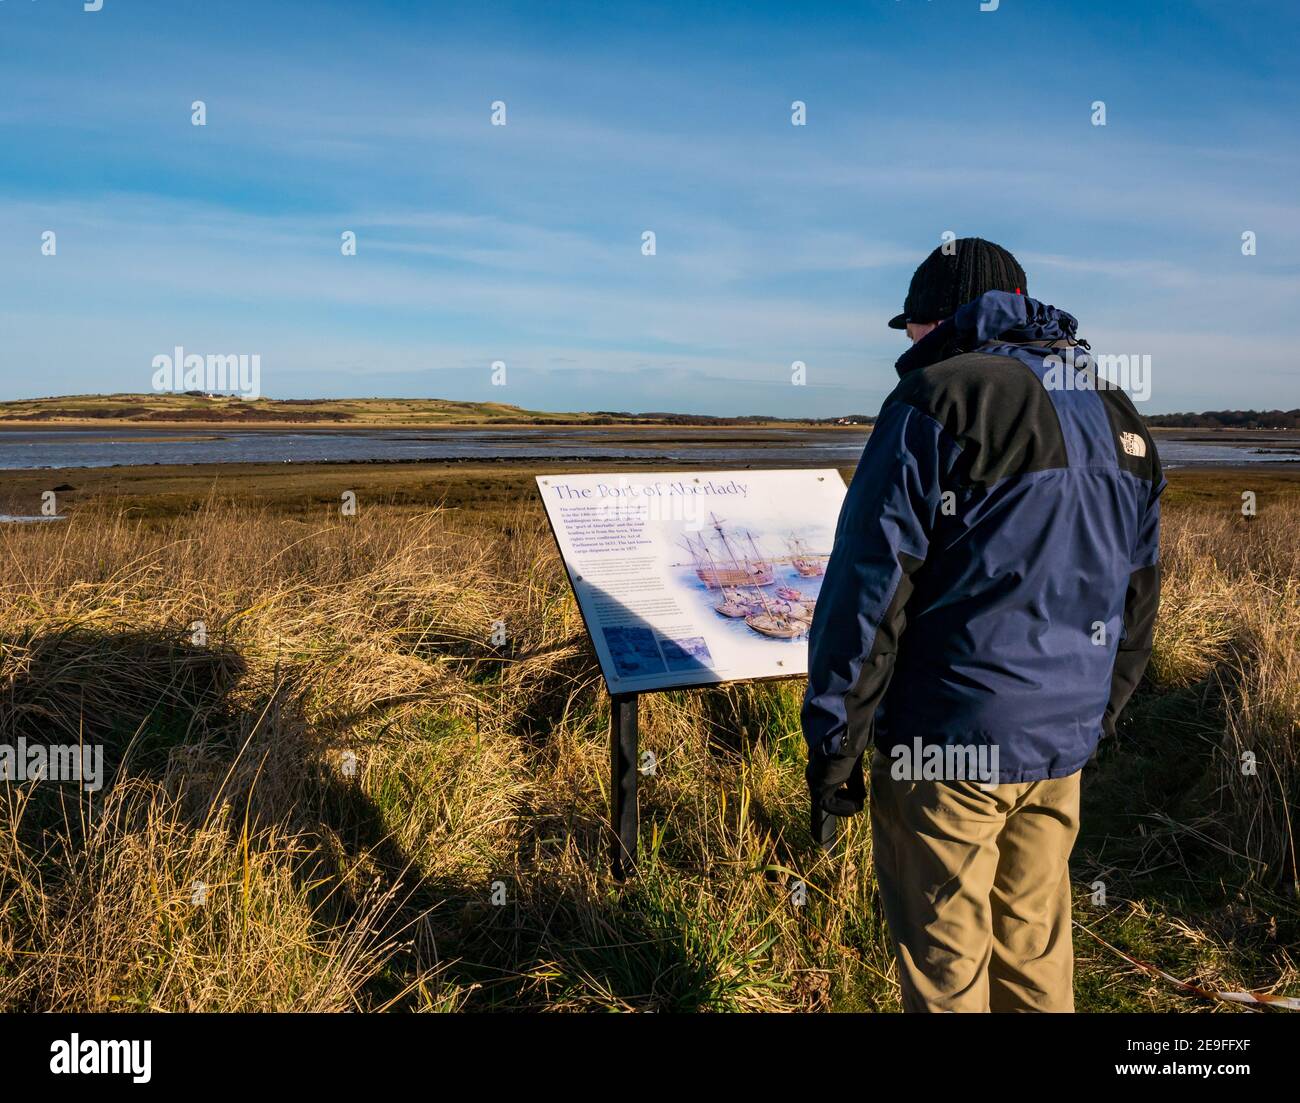 Homme regardant le panneau local d'information sur l'histoire maritime par temps froid ensoleillé, Réserve naturelle d'Aberlady Bay, East Lothian, Écosse, Royaume-Uni Banque D'Images